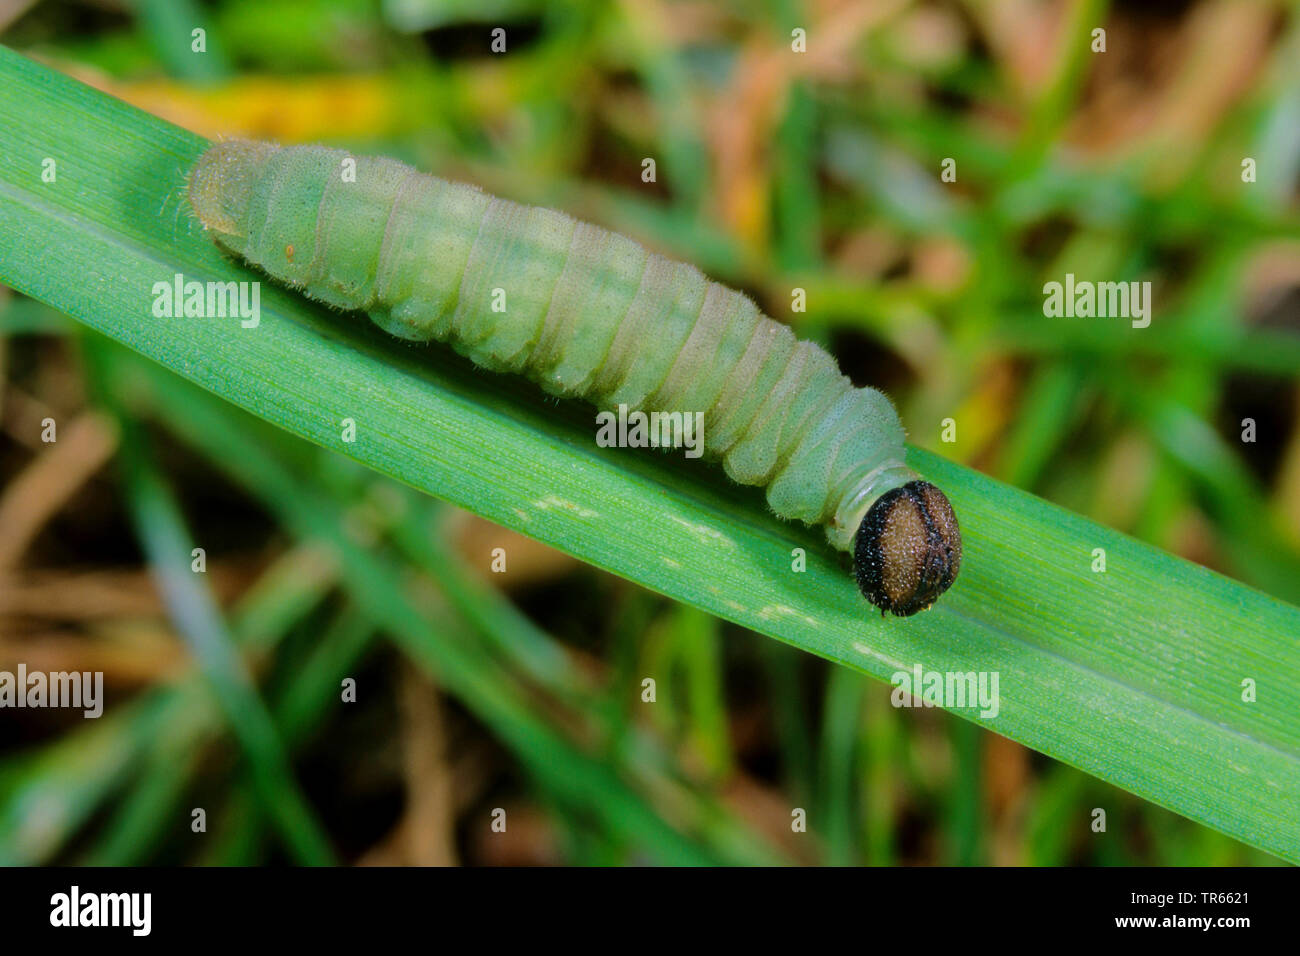 Large skipper (Ochlodes venatus, Ochlodes venata, Ochlodes sylvanus), caterpillar on a blade of grass, side view, Germany Stock Photo